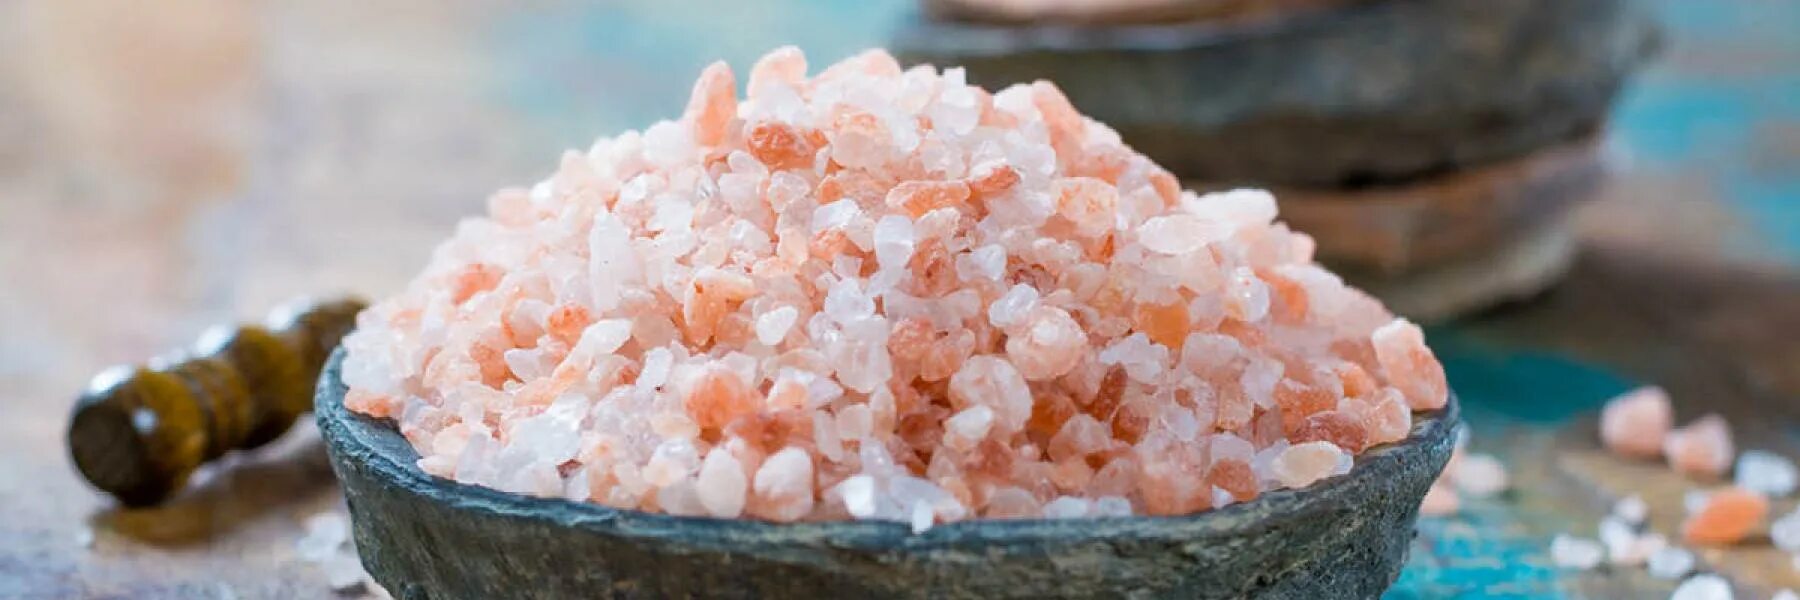 Соль килокалорий. Гималайская соль крошка. Османская соль jpeg. Химический состав гималайской соли. Пищевая соль ккал.